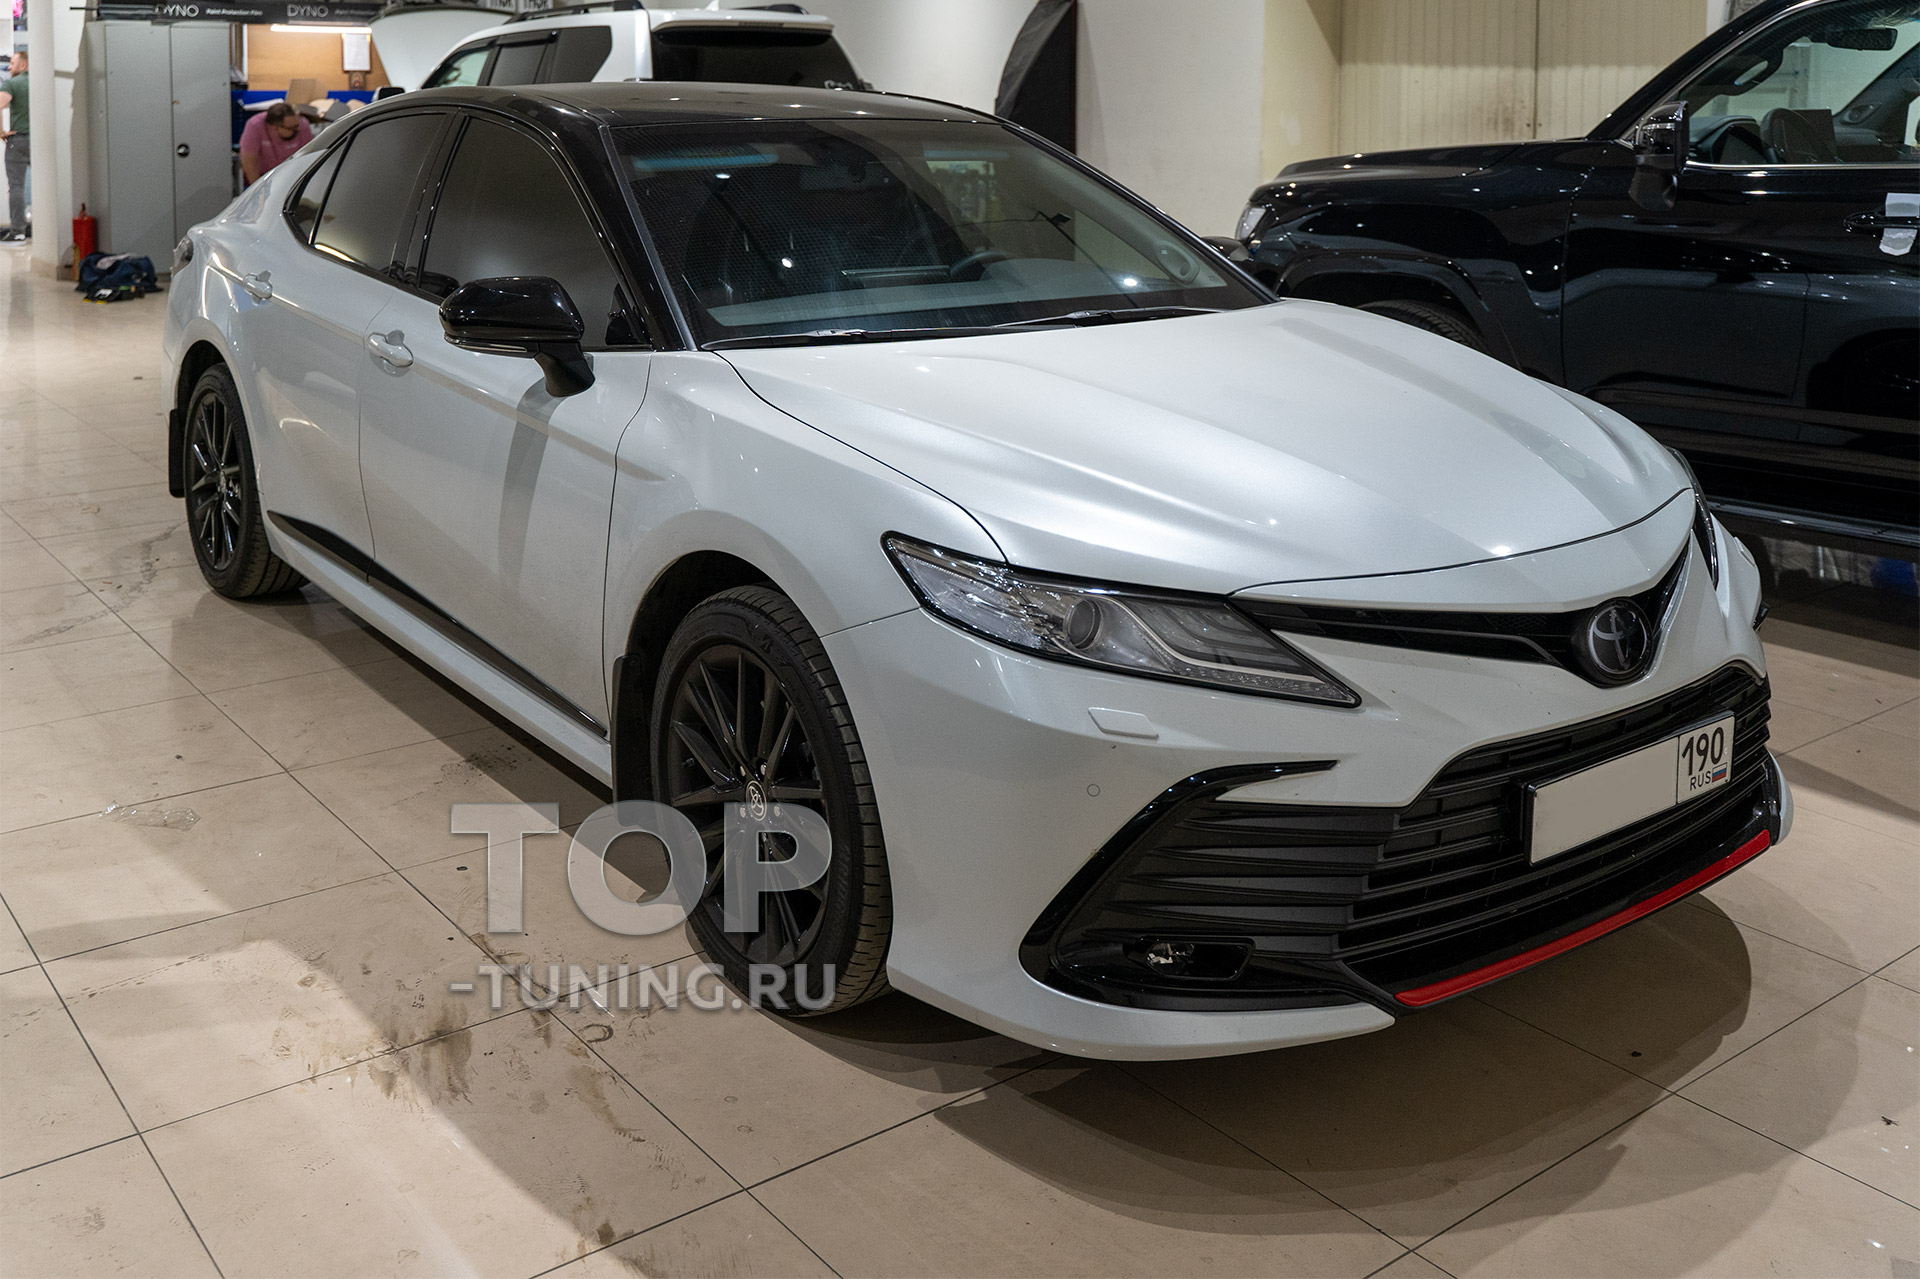 Самый колхозный тюнинг Toyota Camry 70 – instgeocult.ru